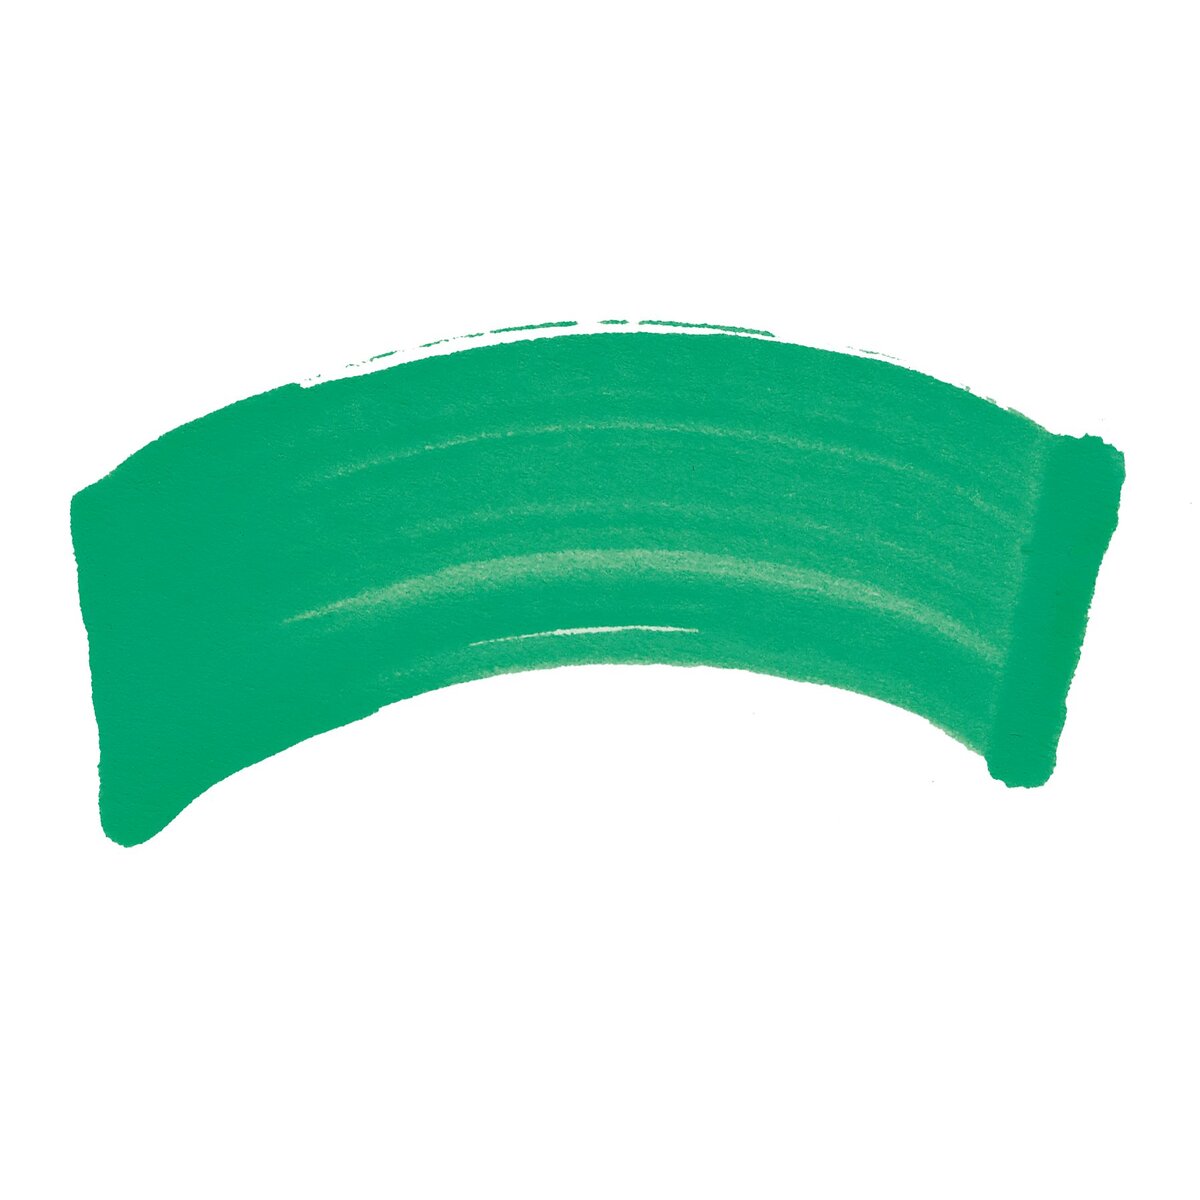 Krink K-55 Fluorescent Paint Marker - Green